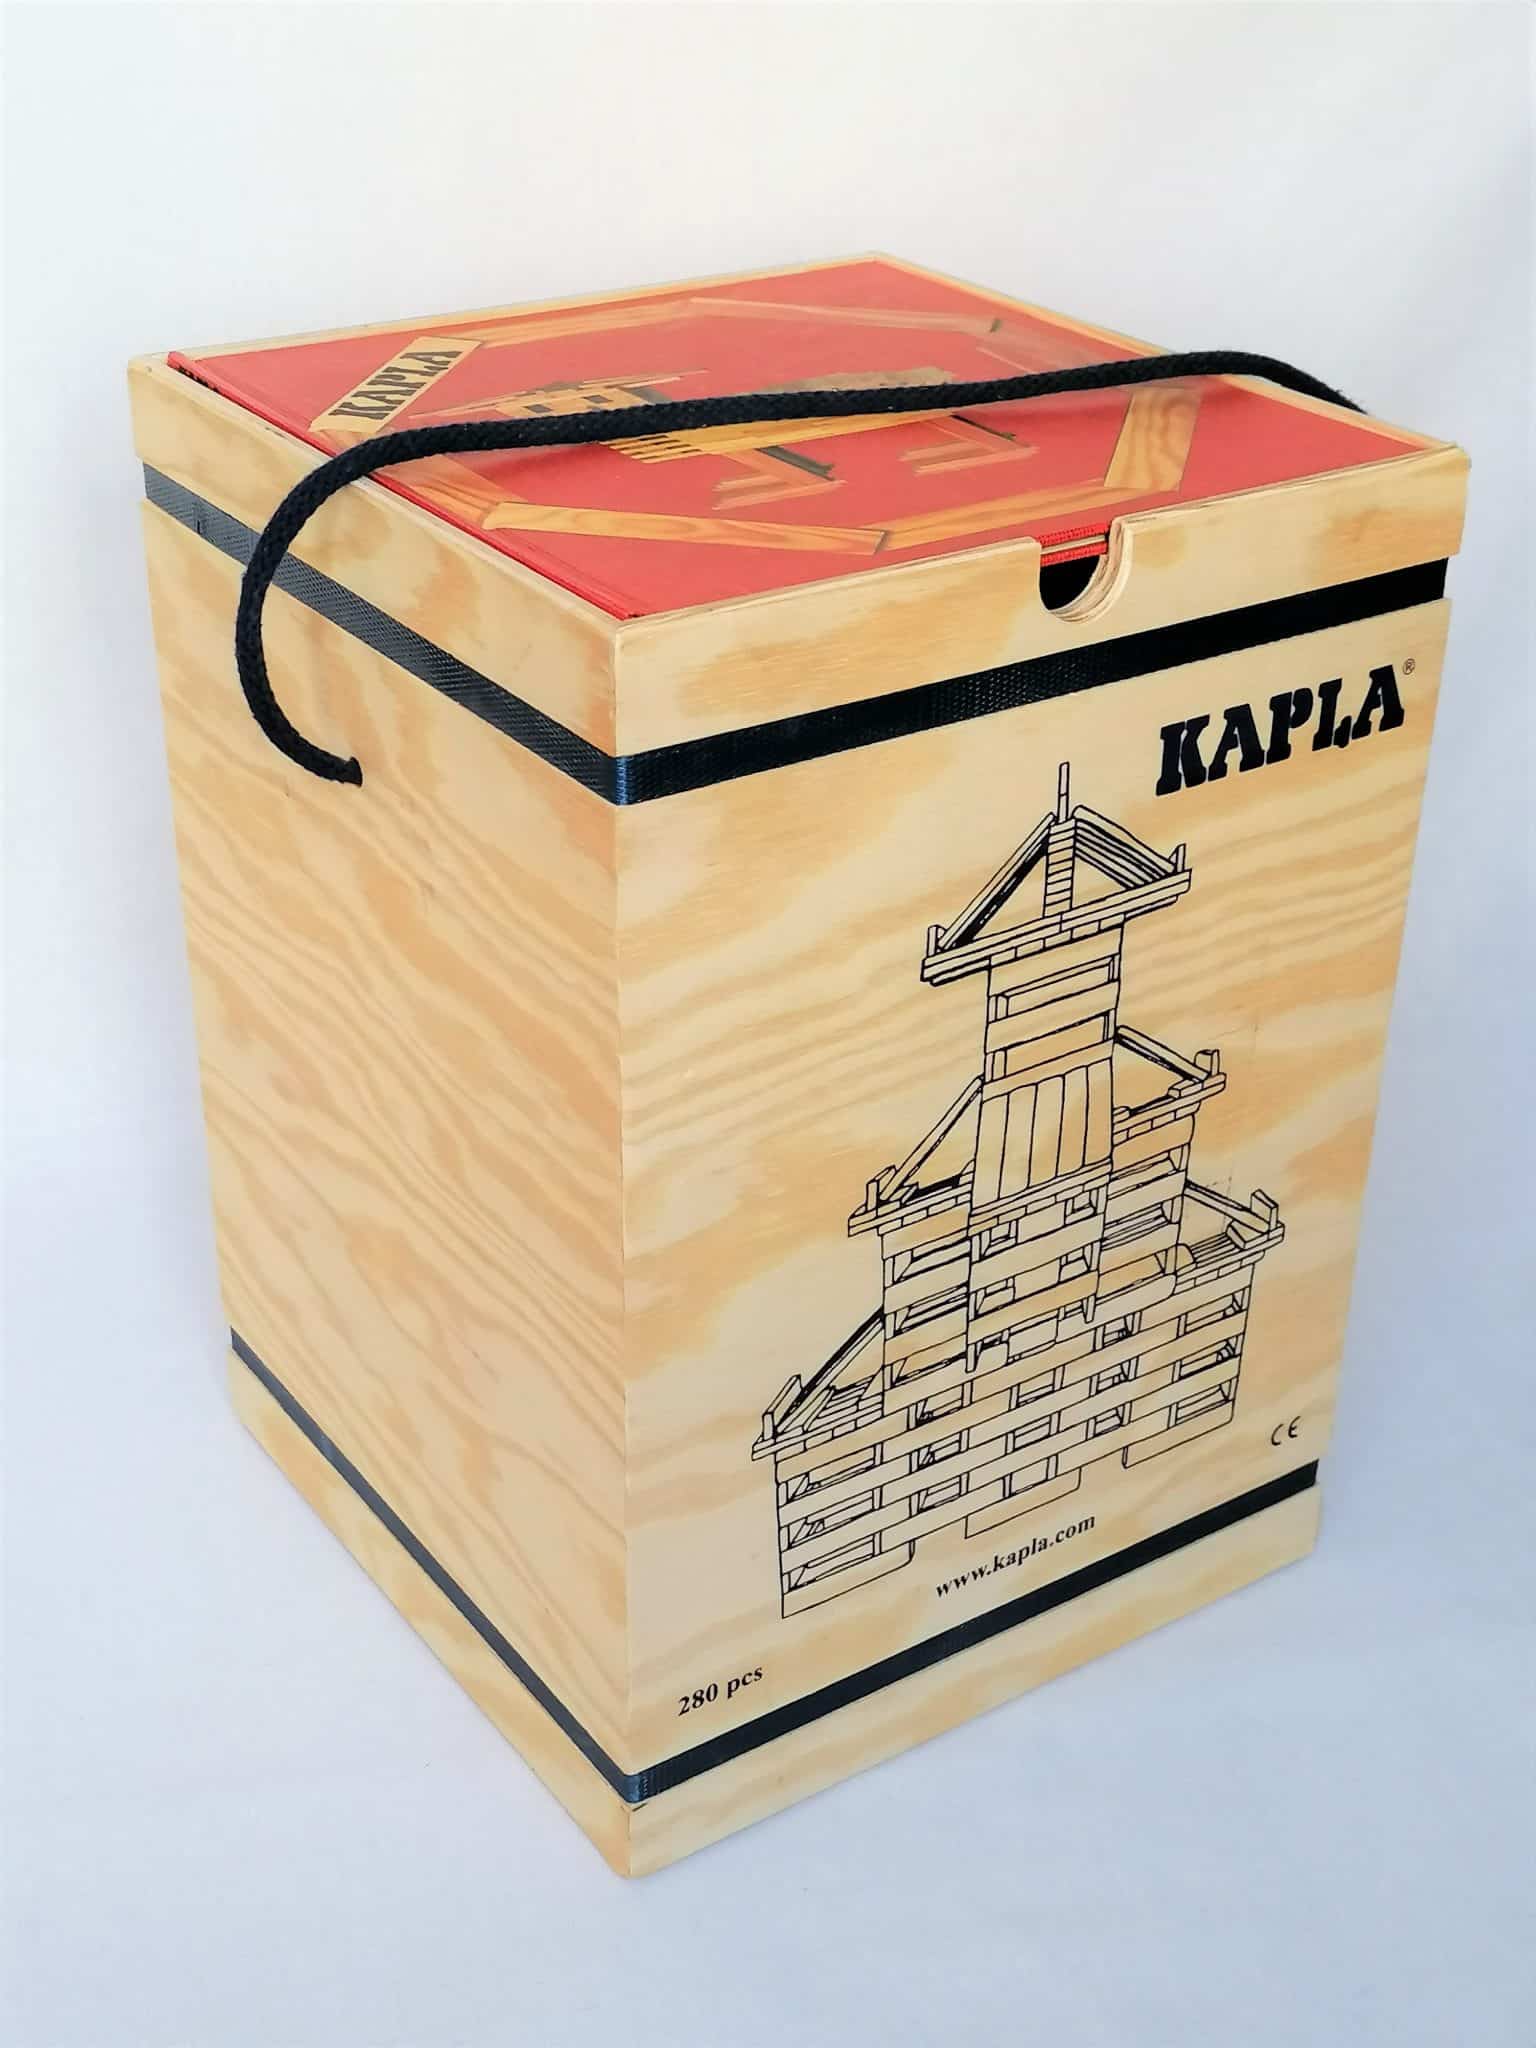 Kapla - Mallette en bois de 280 kaplas + 1 livre d'art rouge - à partir de  6 ans - Sebio